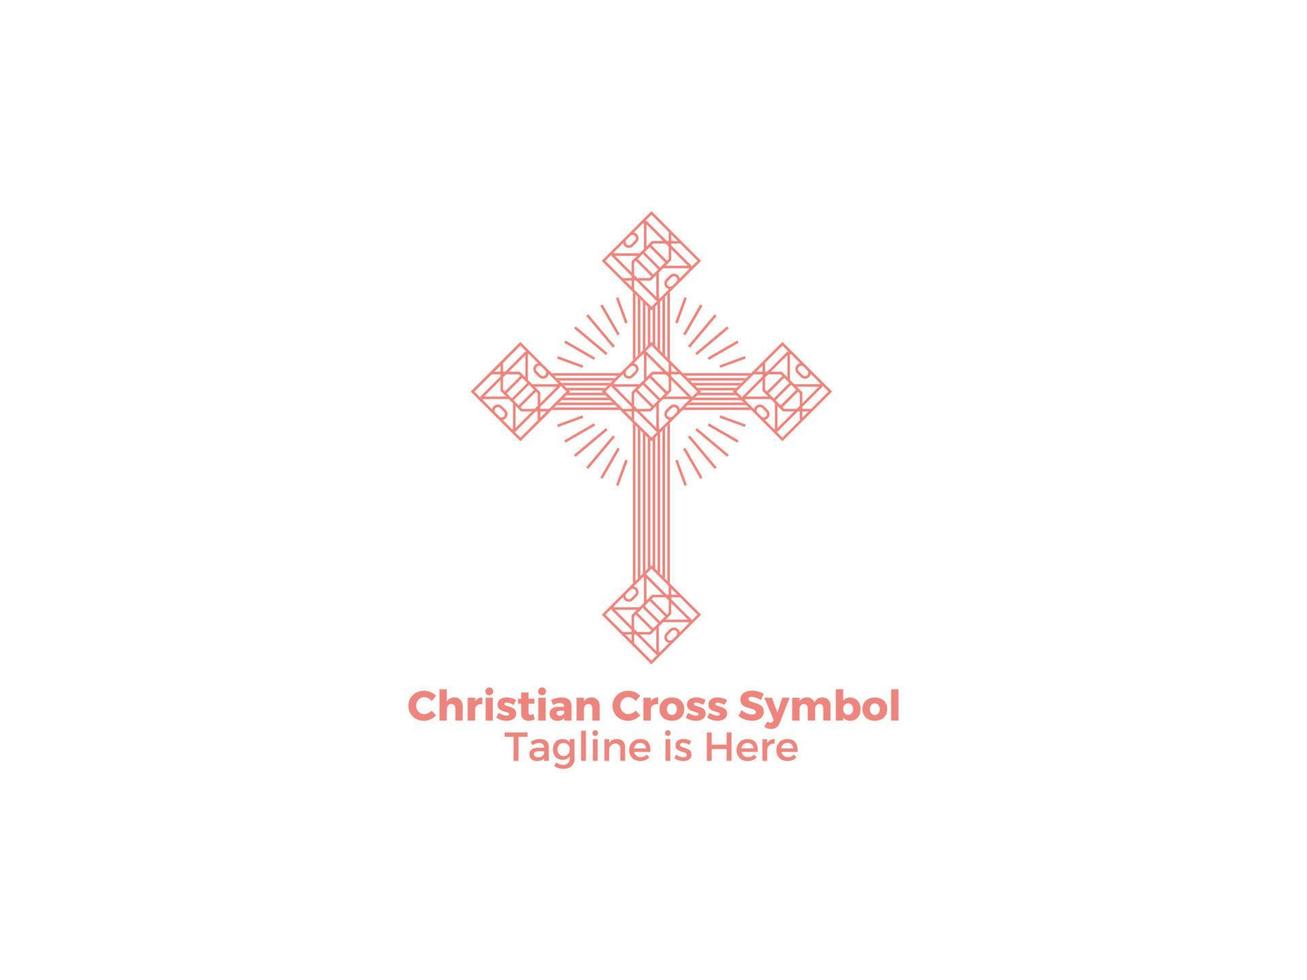 sier religie christelijk katholicisme kruis pictogram geïsoleerd op een witte achtergrond gratis vector